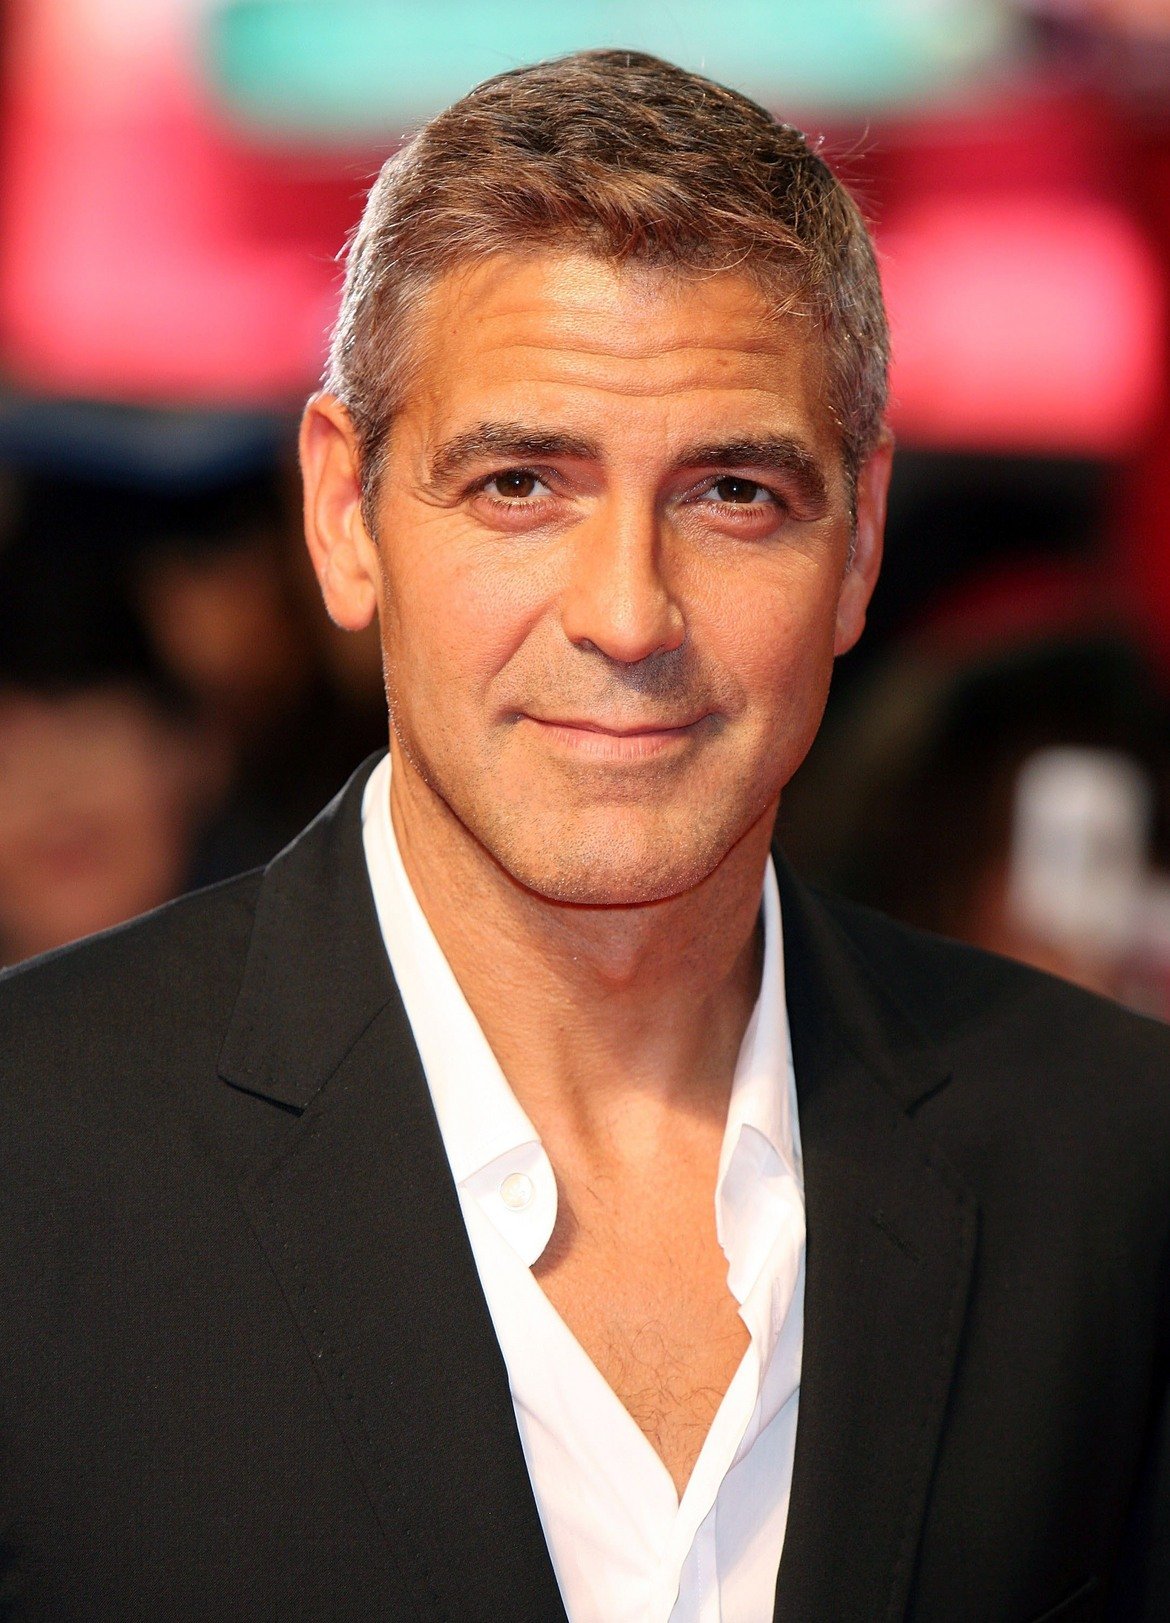  Джордж Клуни 

Според Клуни хората са убедени, че като се преценят плюсовете и минусите на известността, плюсовете ще надделеят, но това далеч не е така. Той признава, че голямото имение обикновено означава самота и изолация, а заради известността си не се е разхождал в Сентръл парк от 15 години. 

Актьорът казва, че му е смешно как някои хора се стремят да станат звезди на всяка цена, само за да се окажат в свят, който ги ограничава и променя живота им завинаги. 